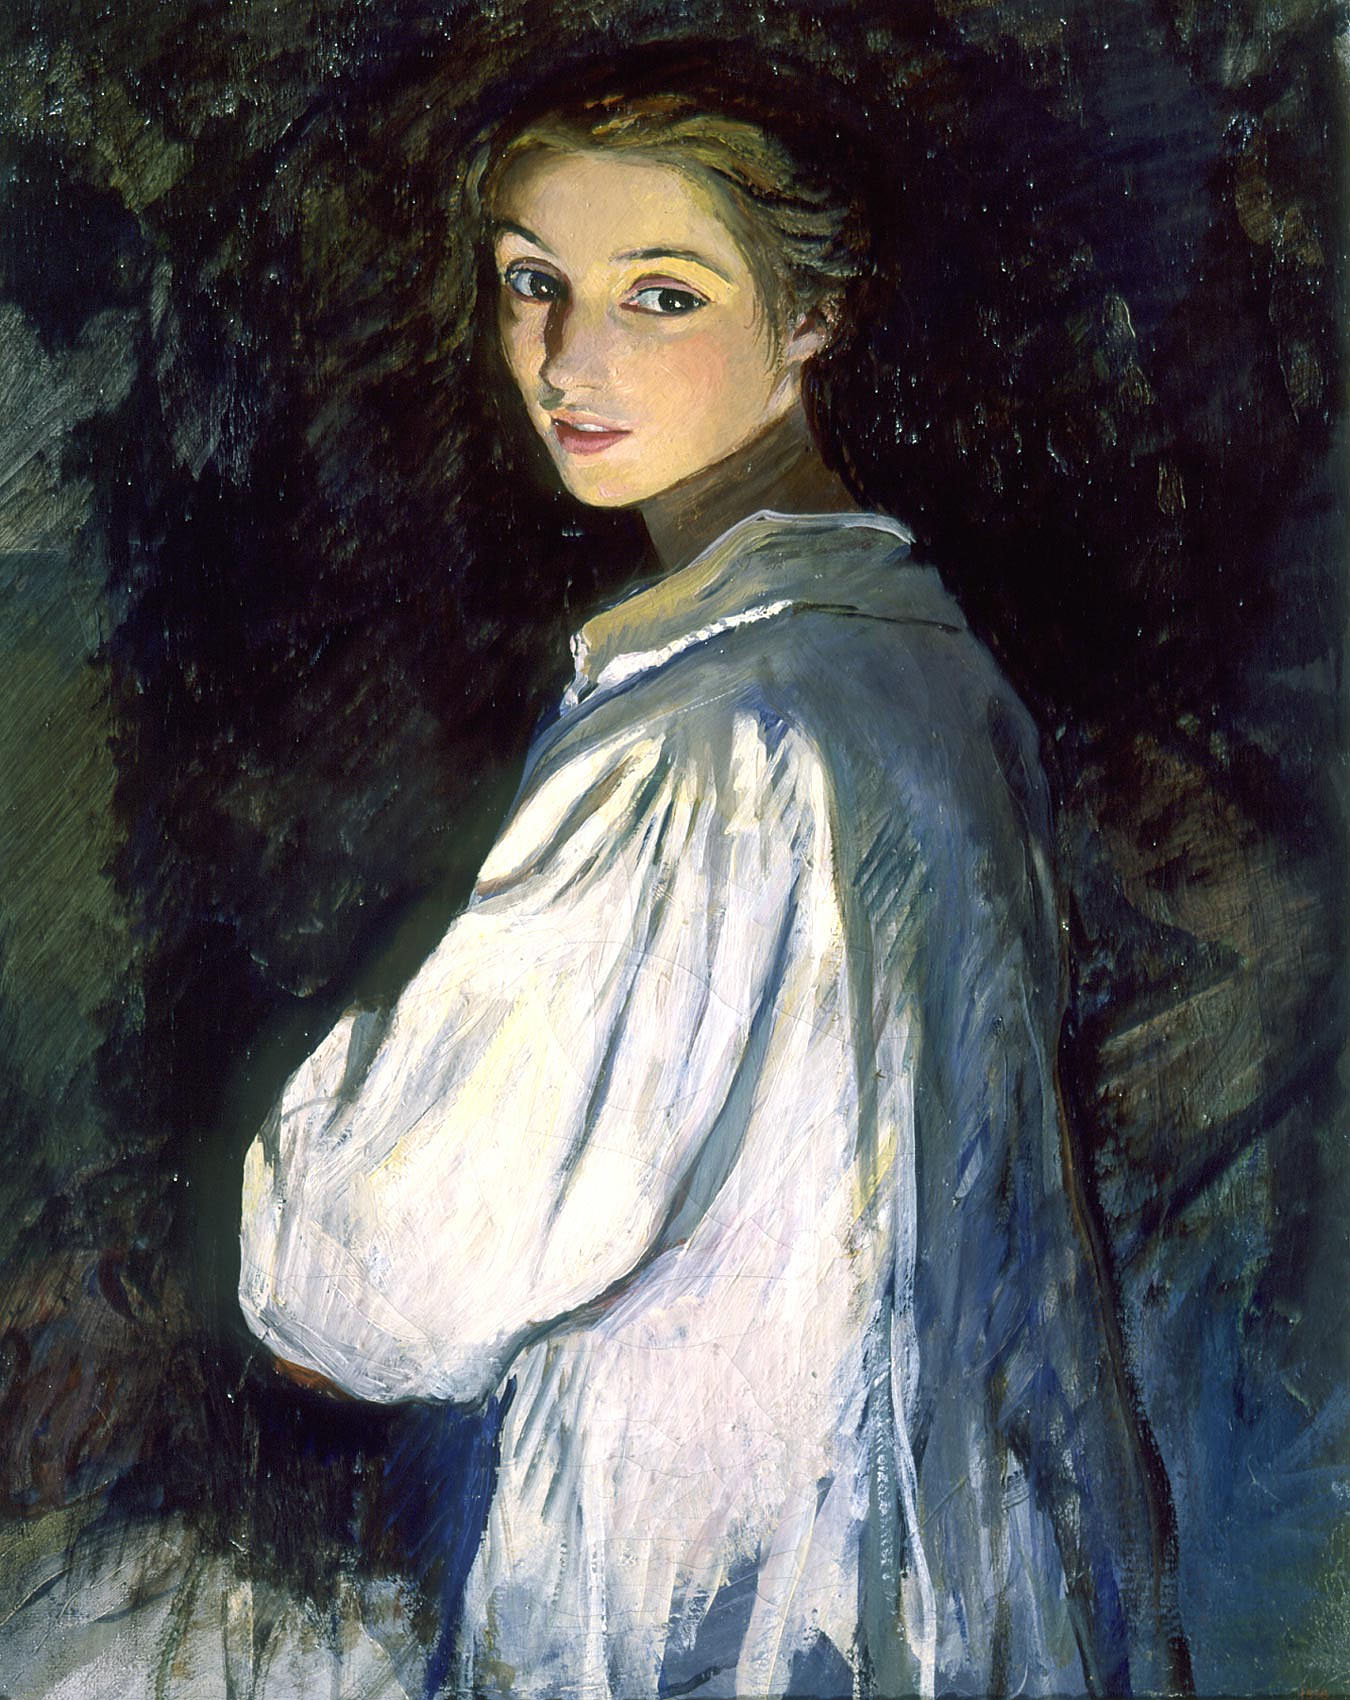 少女與燭光 by Zinaida Serebriakova - 1911年 